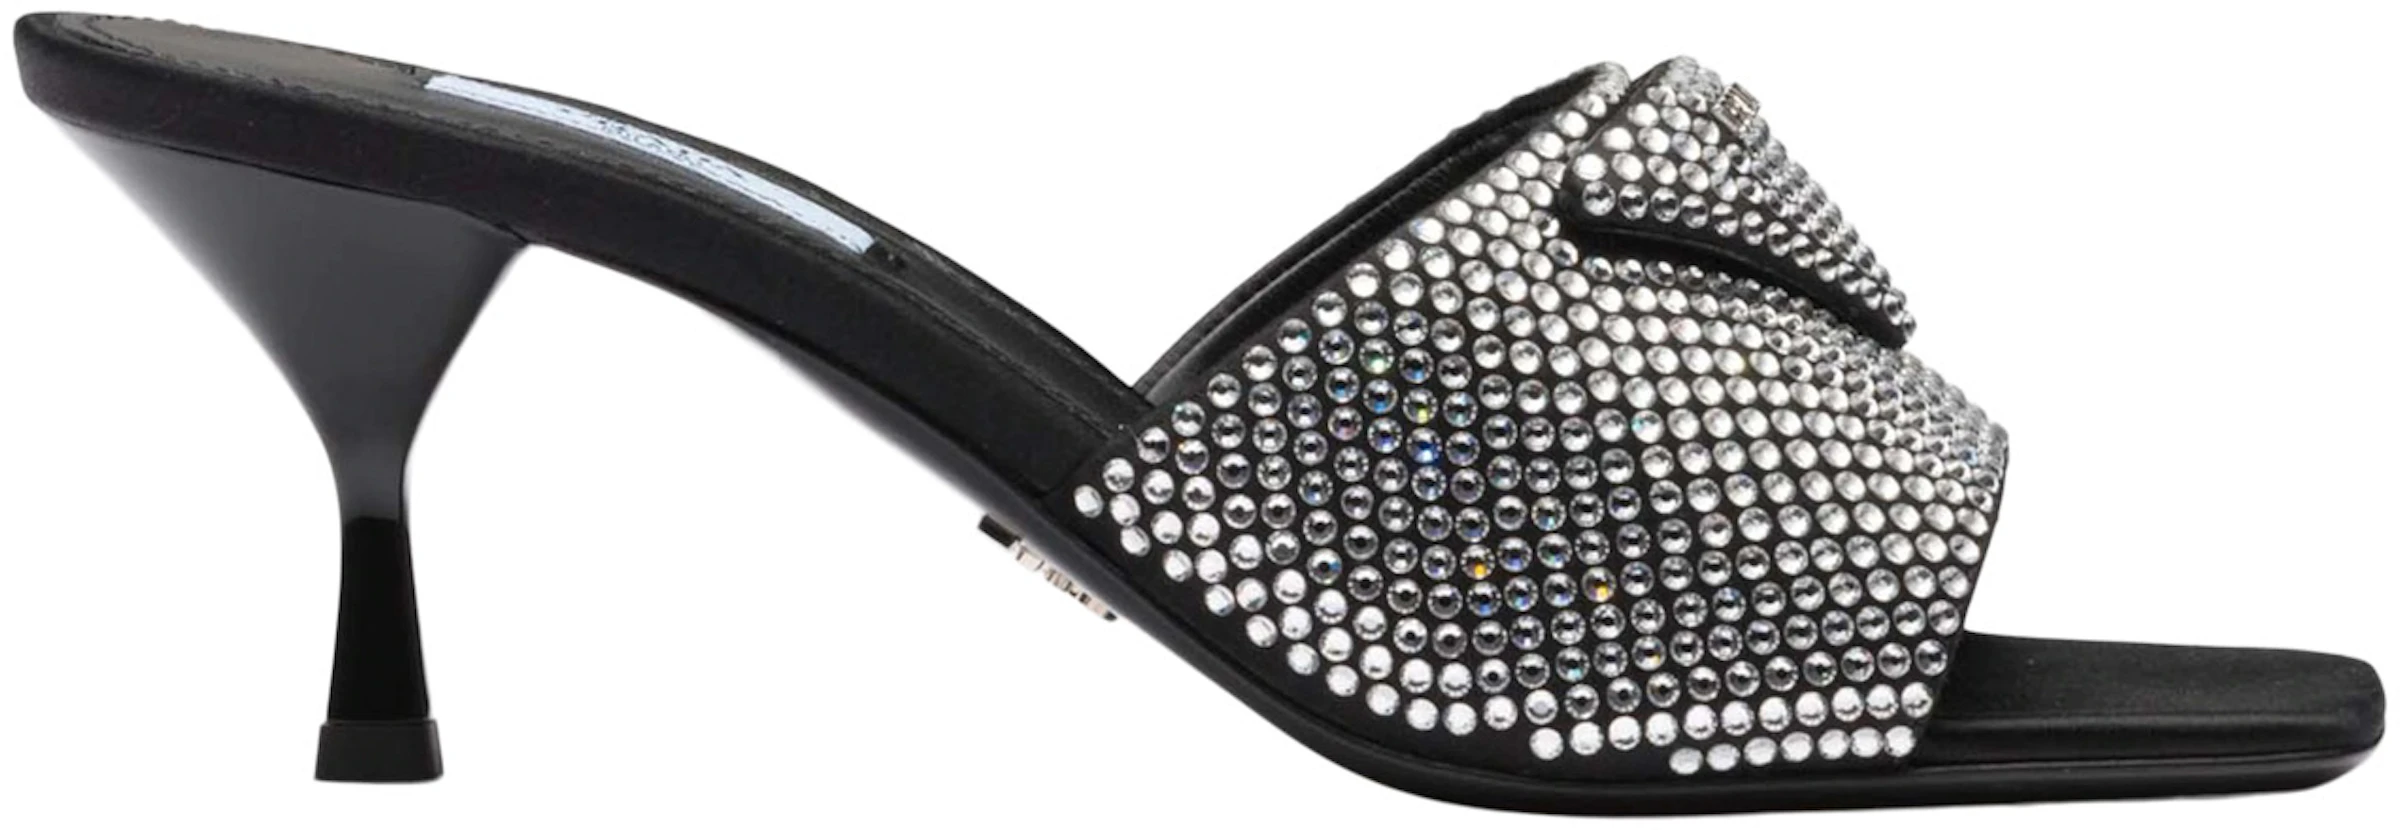 Prada 65mm Crystal Heeled Sandals Black Satin - 1XX608_2AWL_F0T7O_F_065 - US